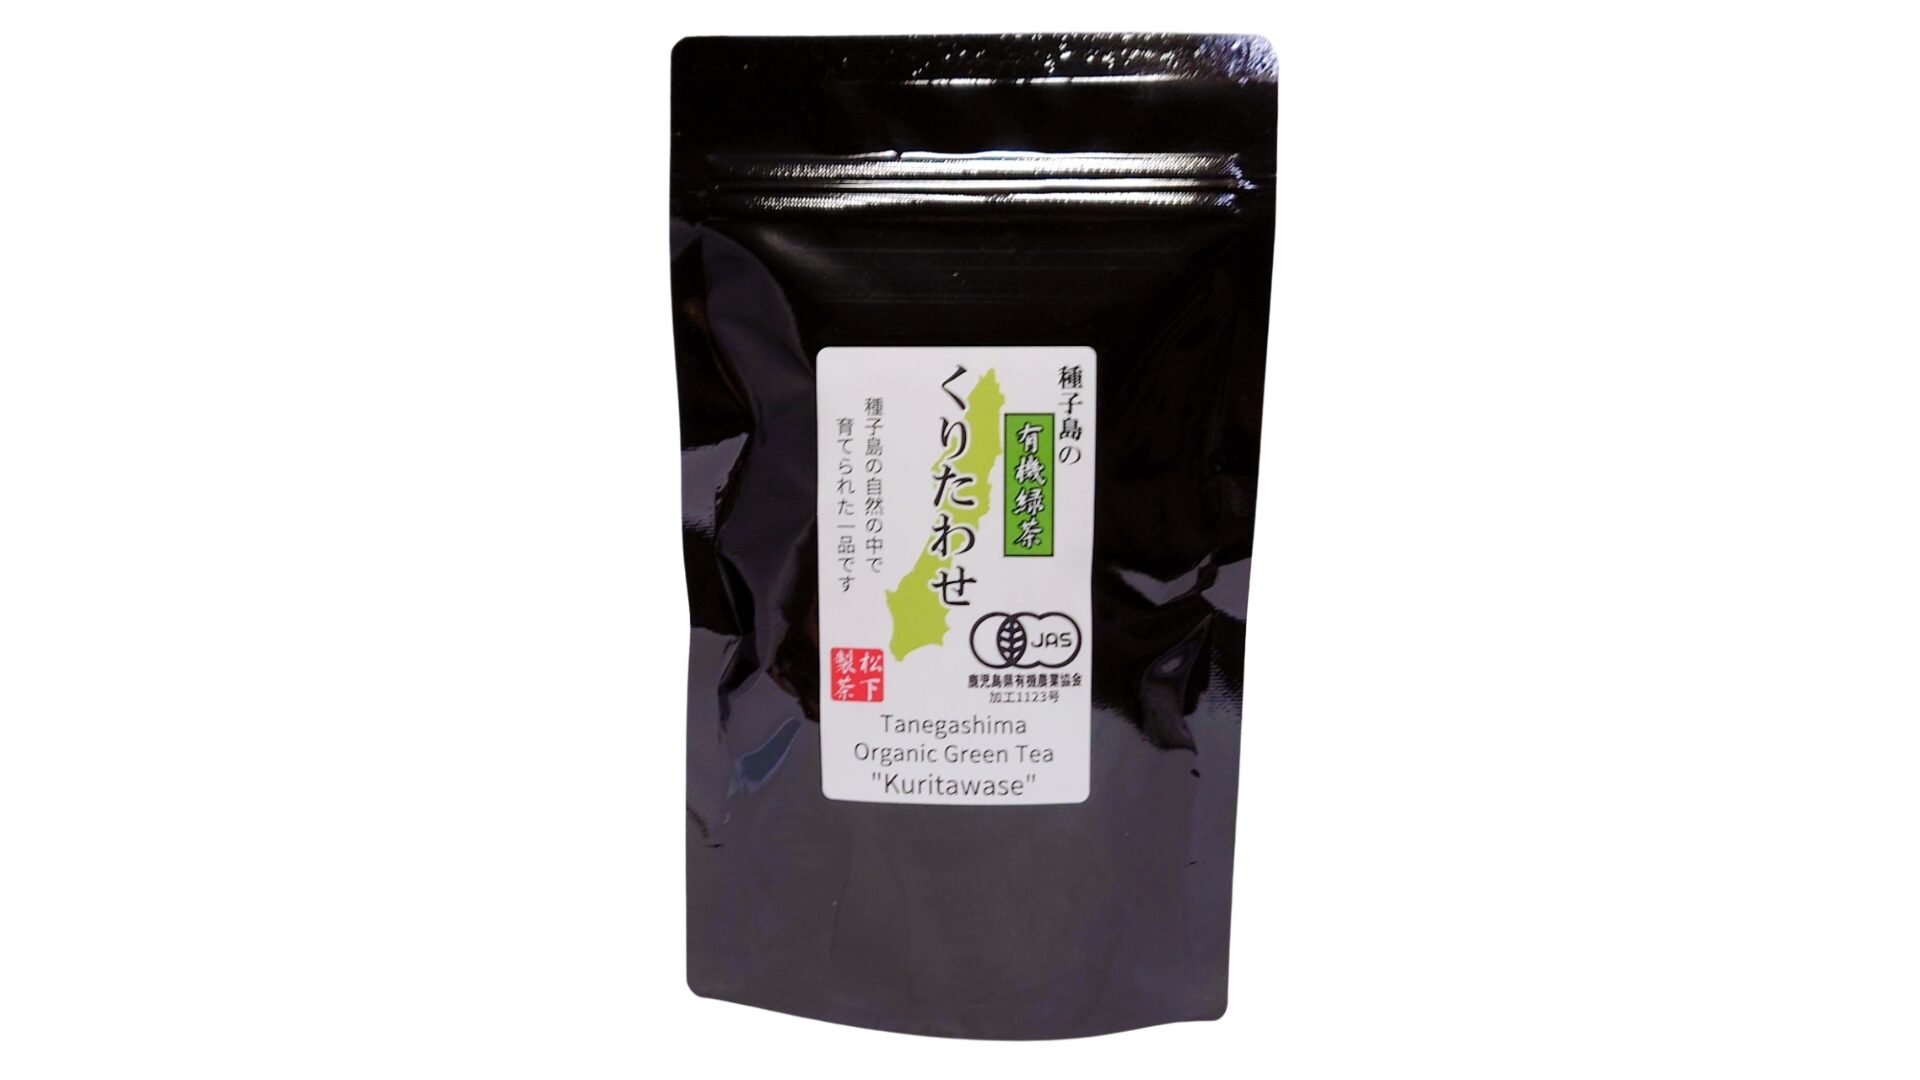 松下製茶 種子島の有機緑茶『くりたわせ』 茶葉(リーフ) 100g